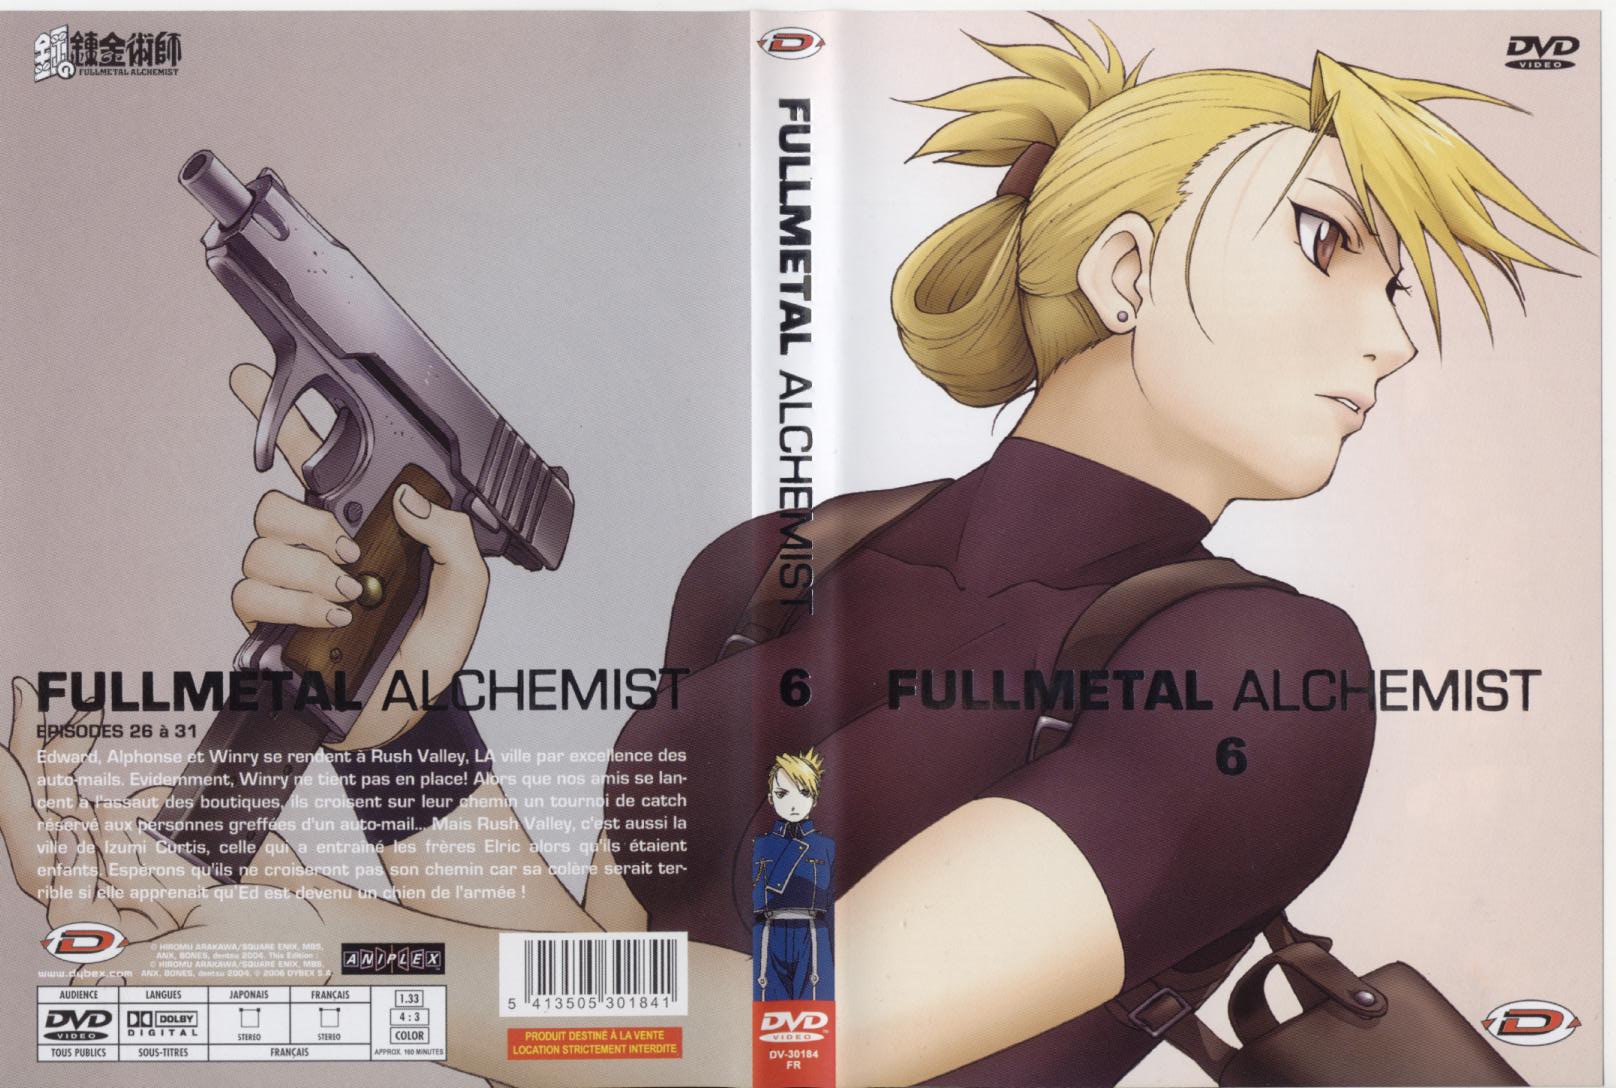 Jaquette DVD Fullmetal alchemist vol 6